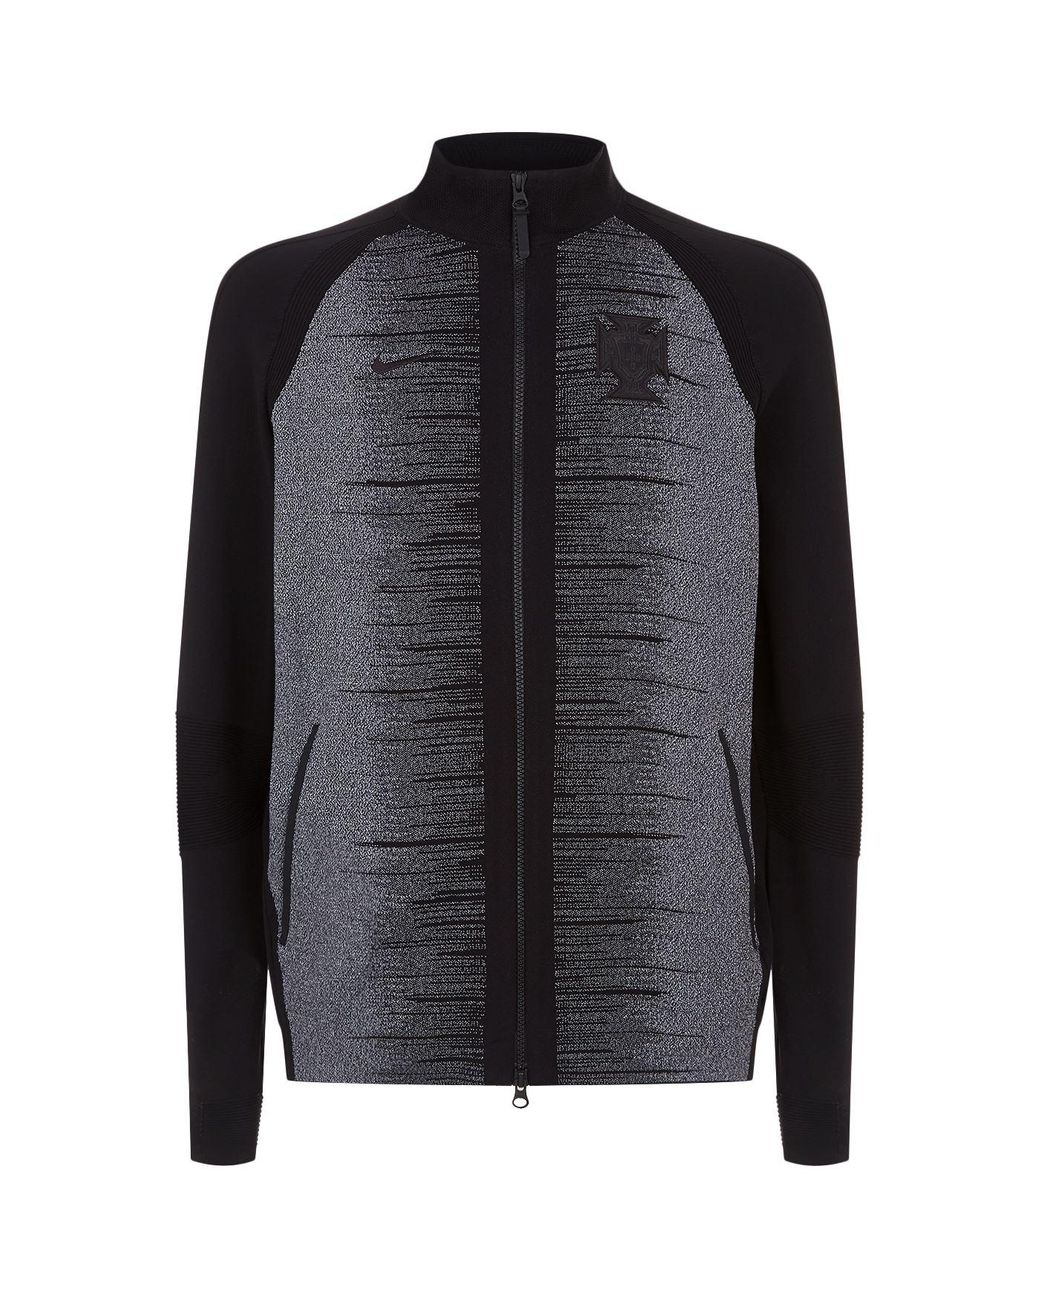 Nike Portugal Tech Knit Jacket in Black for Men | Lyst